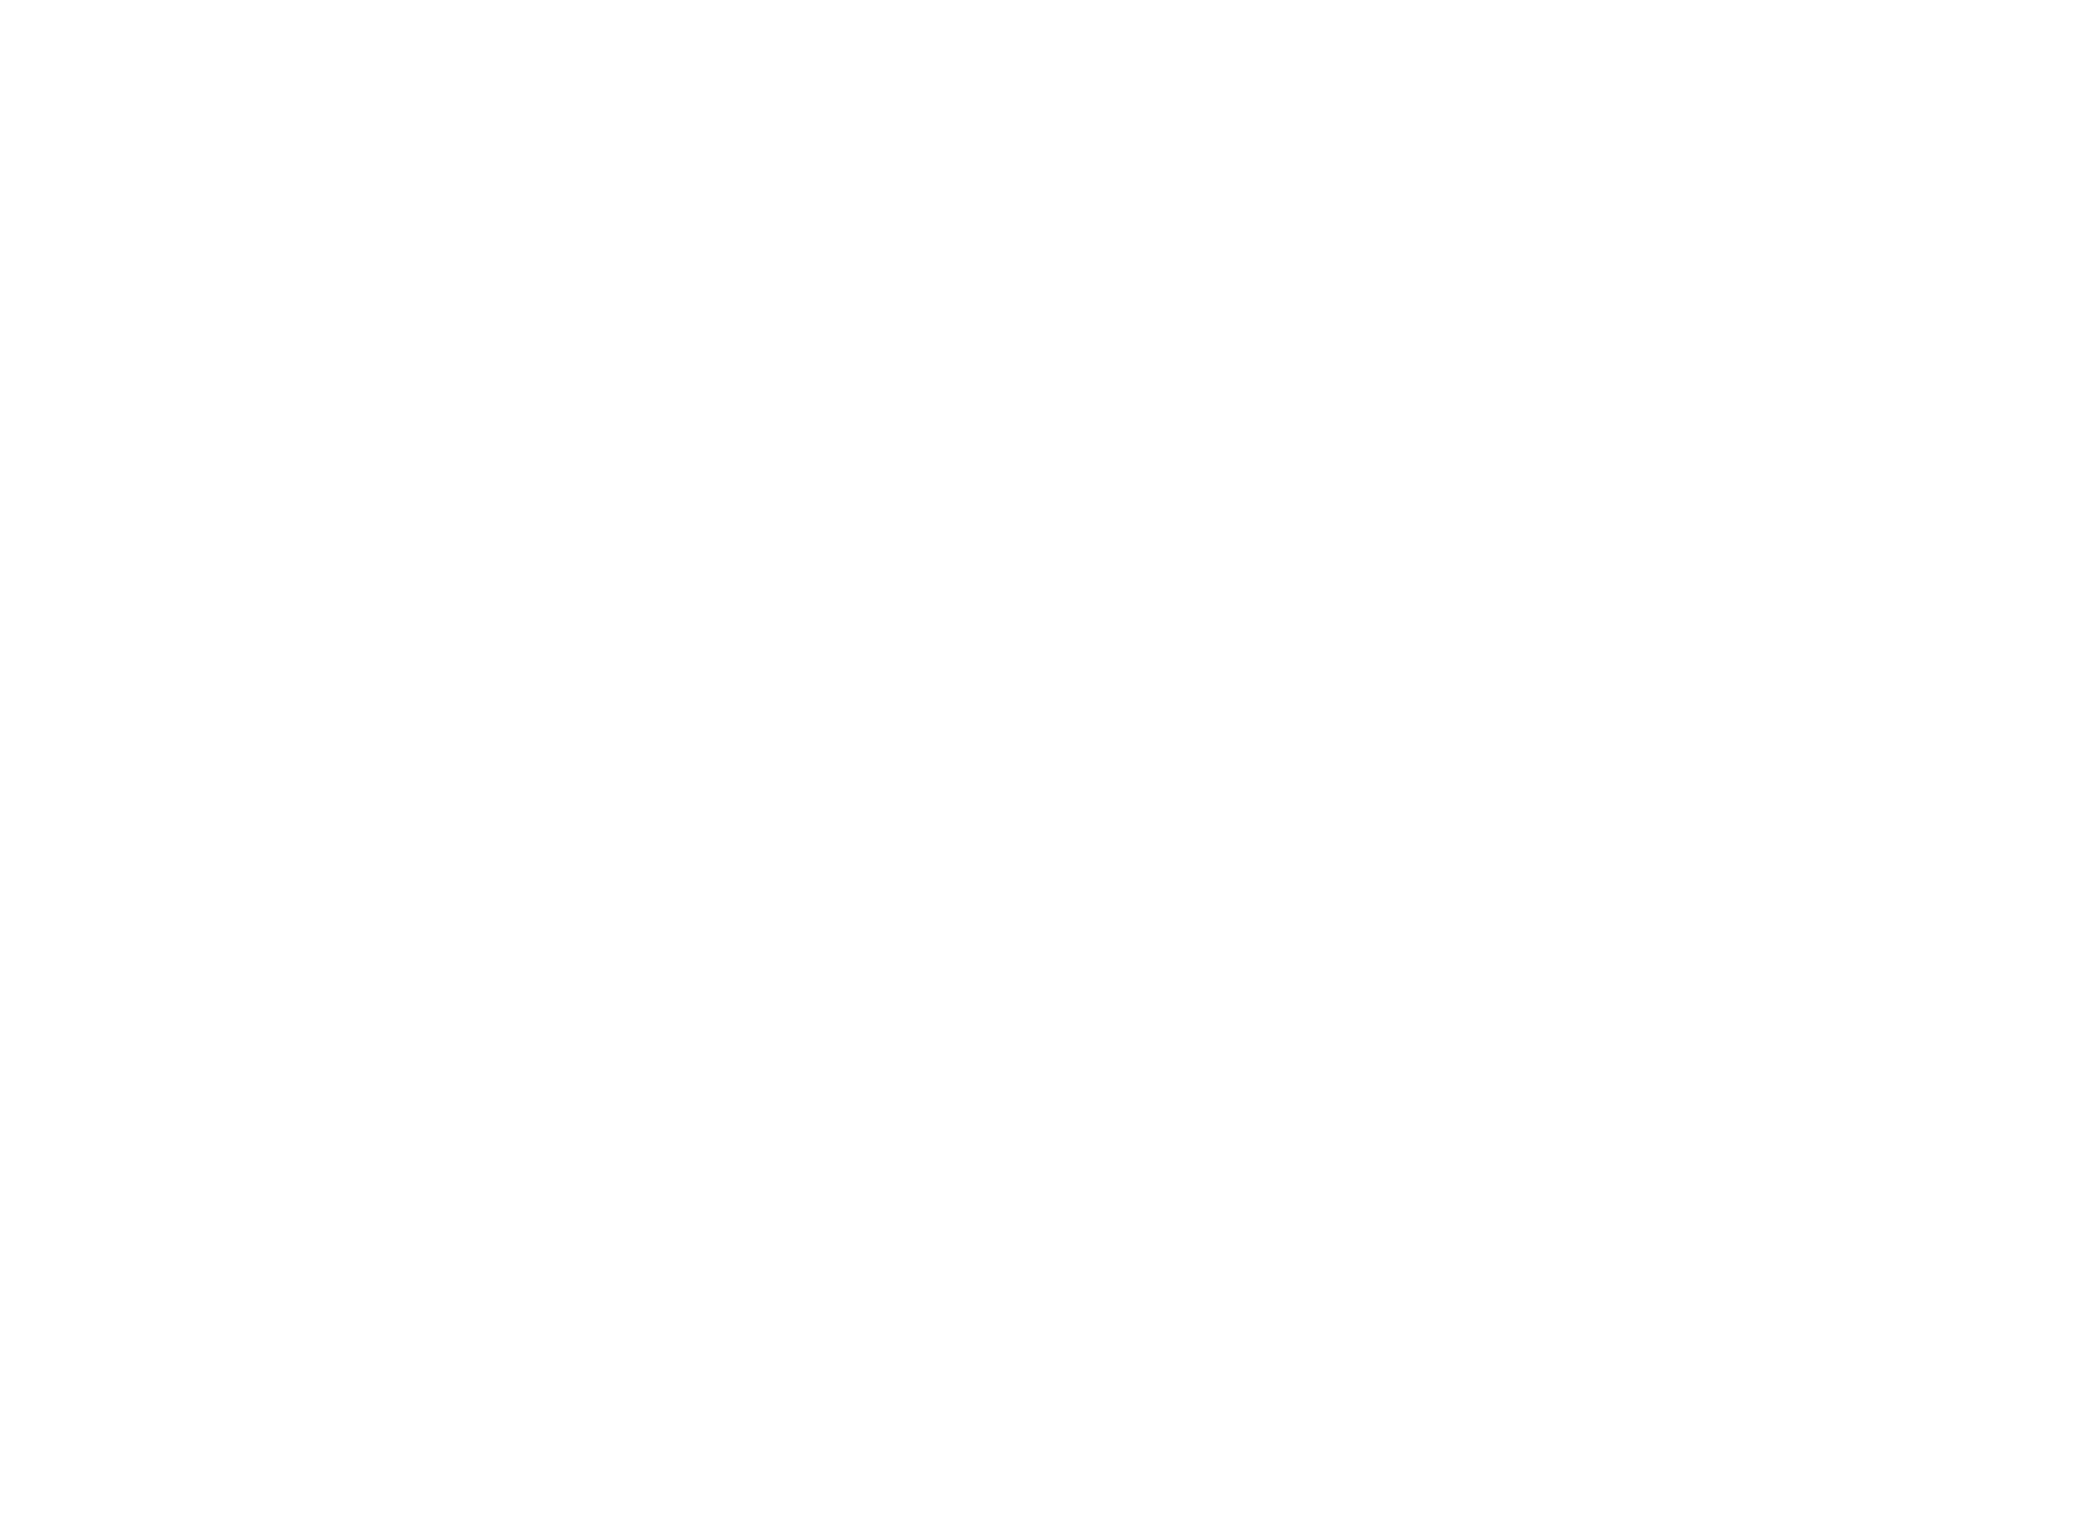 JD Pinto